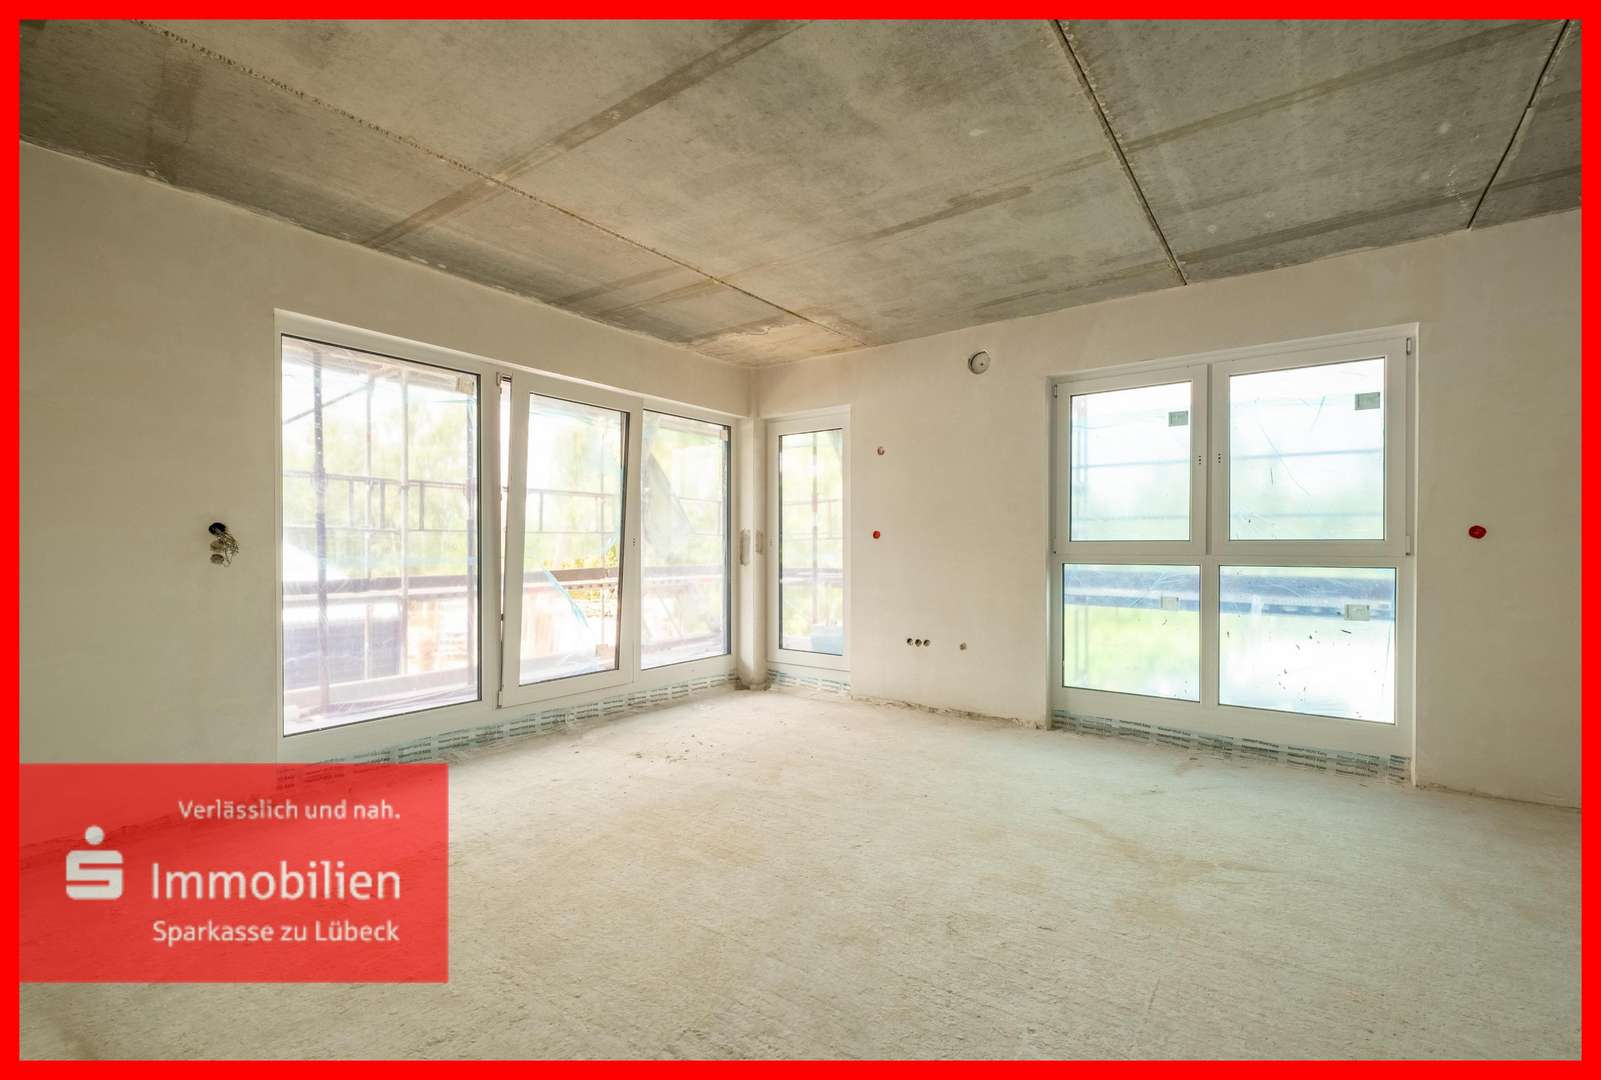 Wohnen - Etagenwohnung in 23843 Bad Oldesloe mit 76m² kaufen